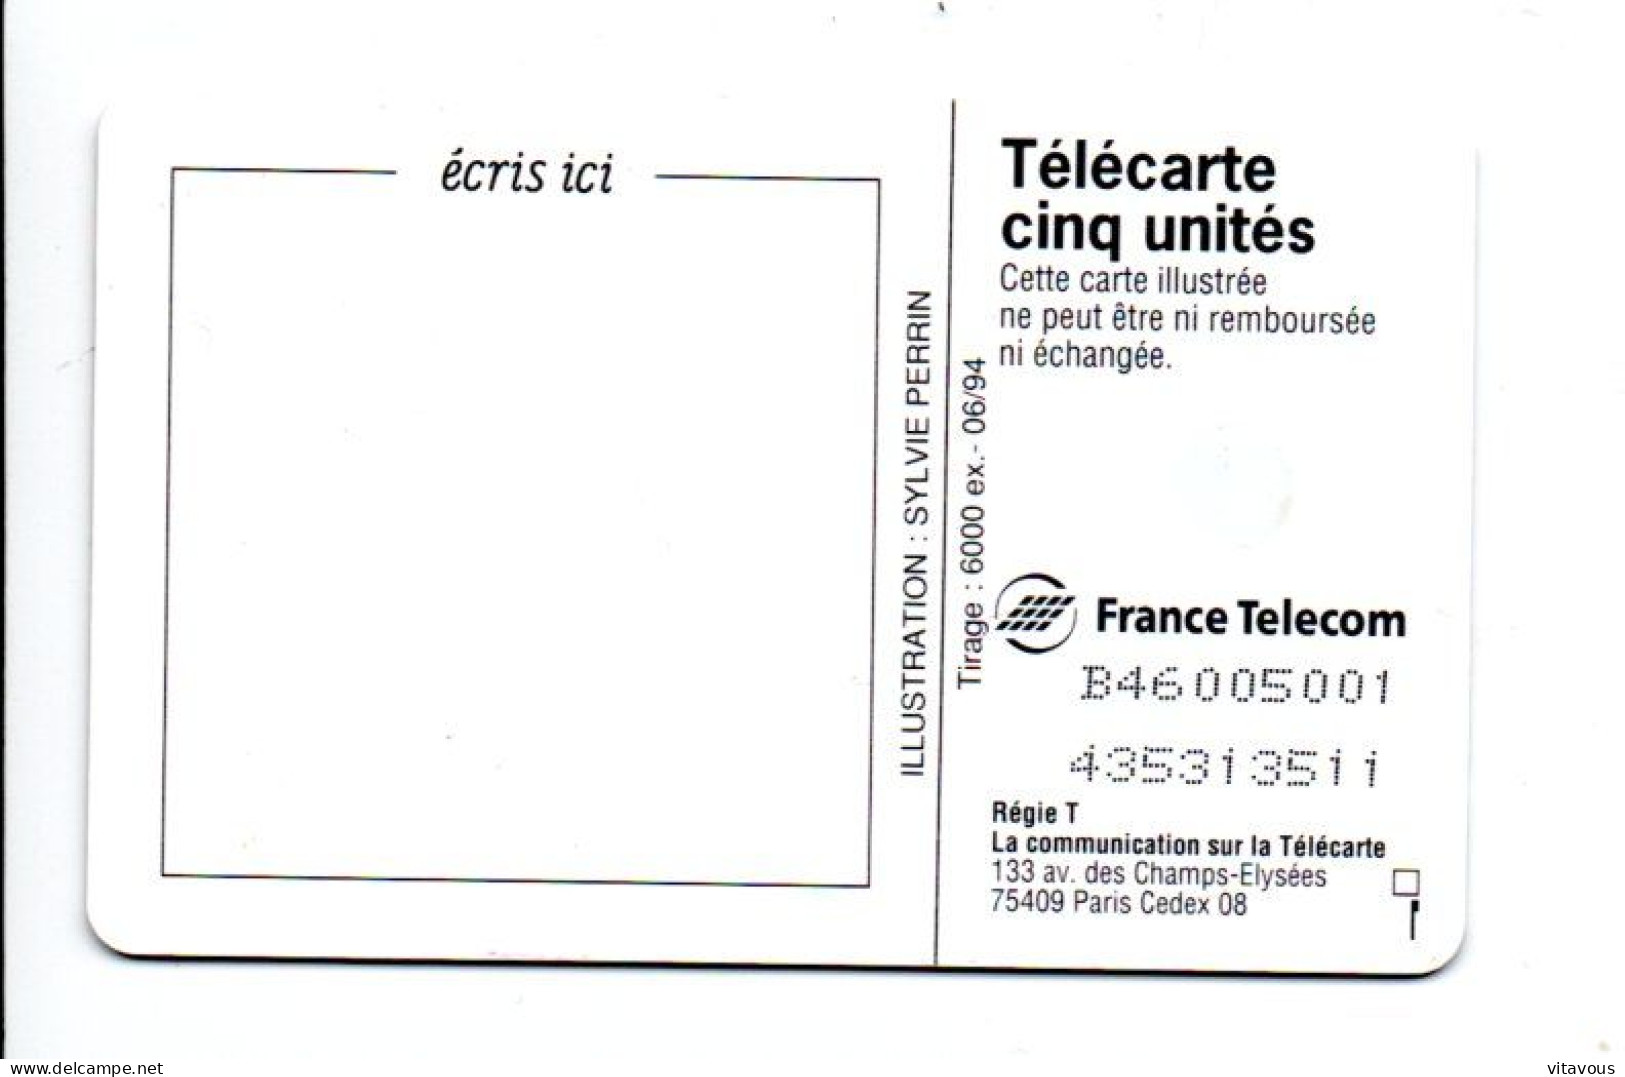 GN 39 Joyeux Anniversaire Gâteau Cake Télécarte FRANCE 5 Unités Phonecard (F 105) - 5 Unités